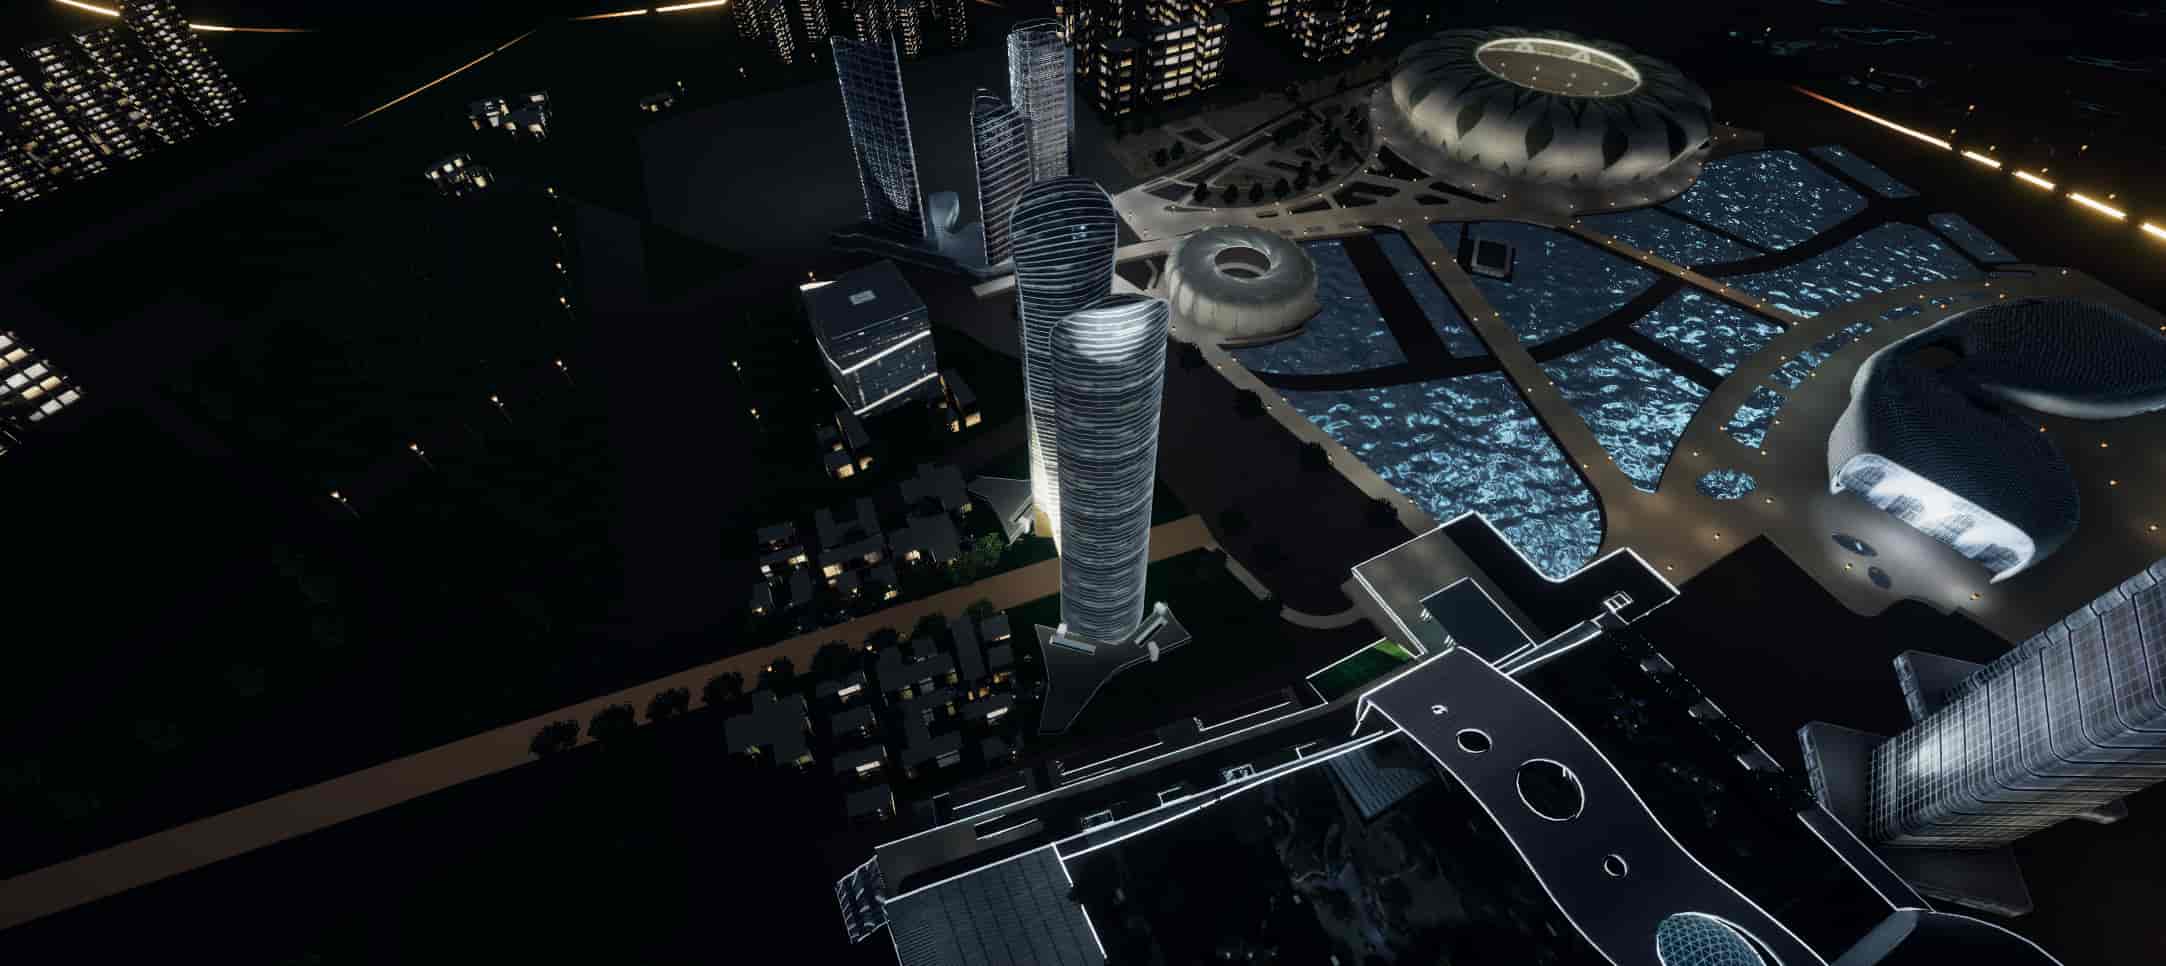 智慧城市智慧社区数据可视化3D展示项目